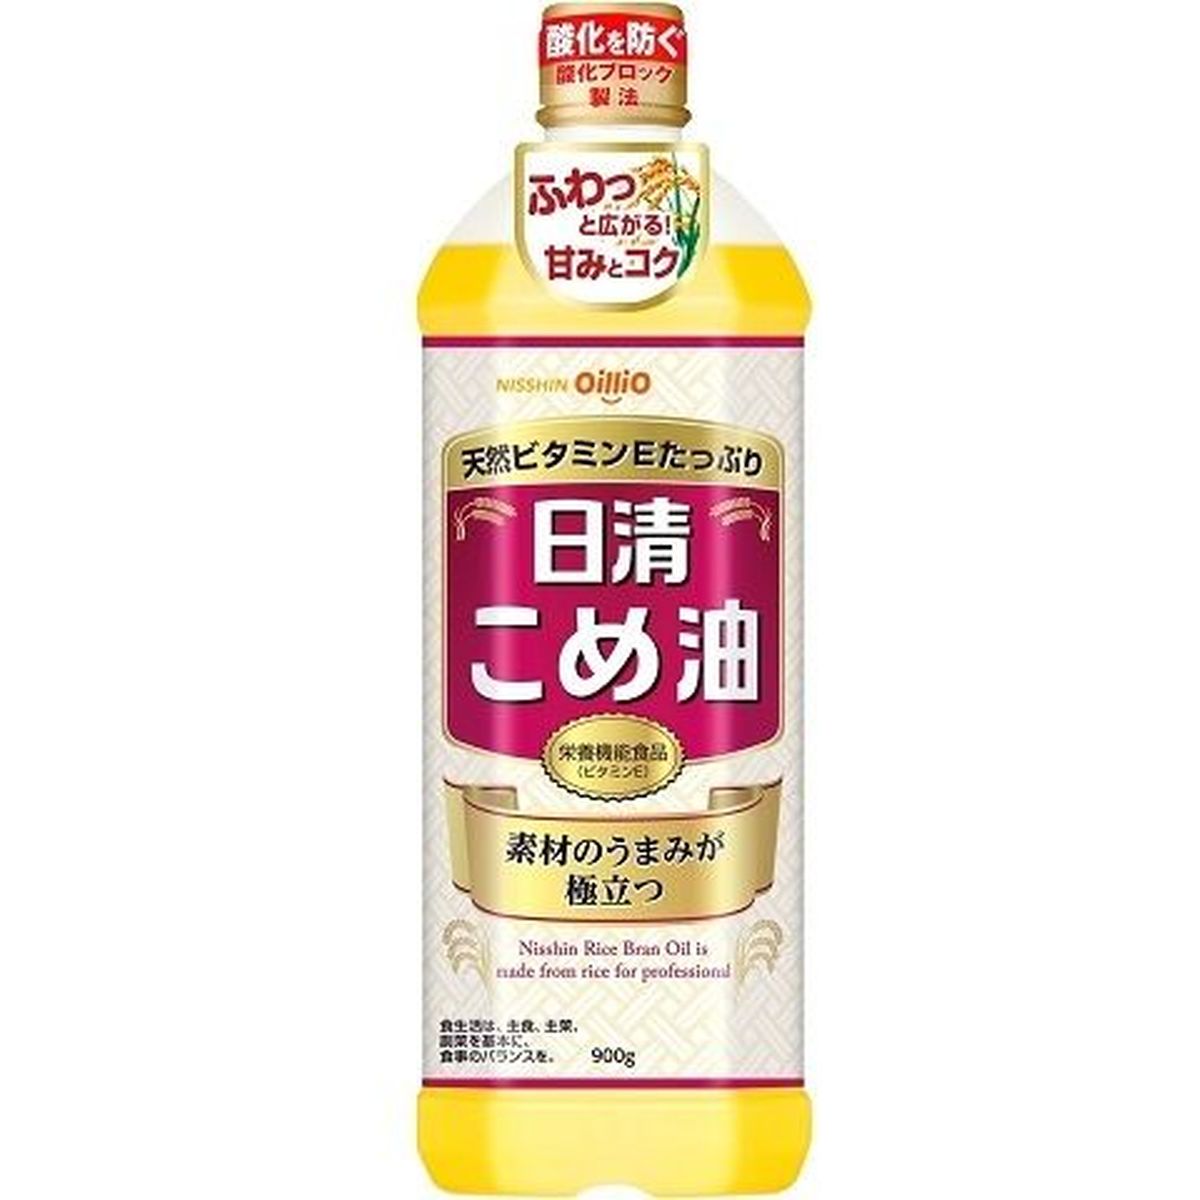 【8個入リ】日清オイリオ コメ油 ポリ 900g